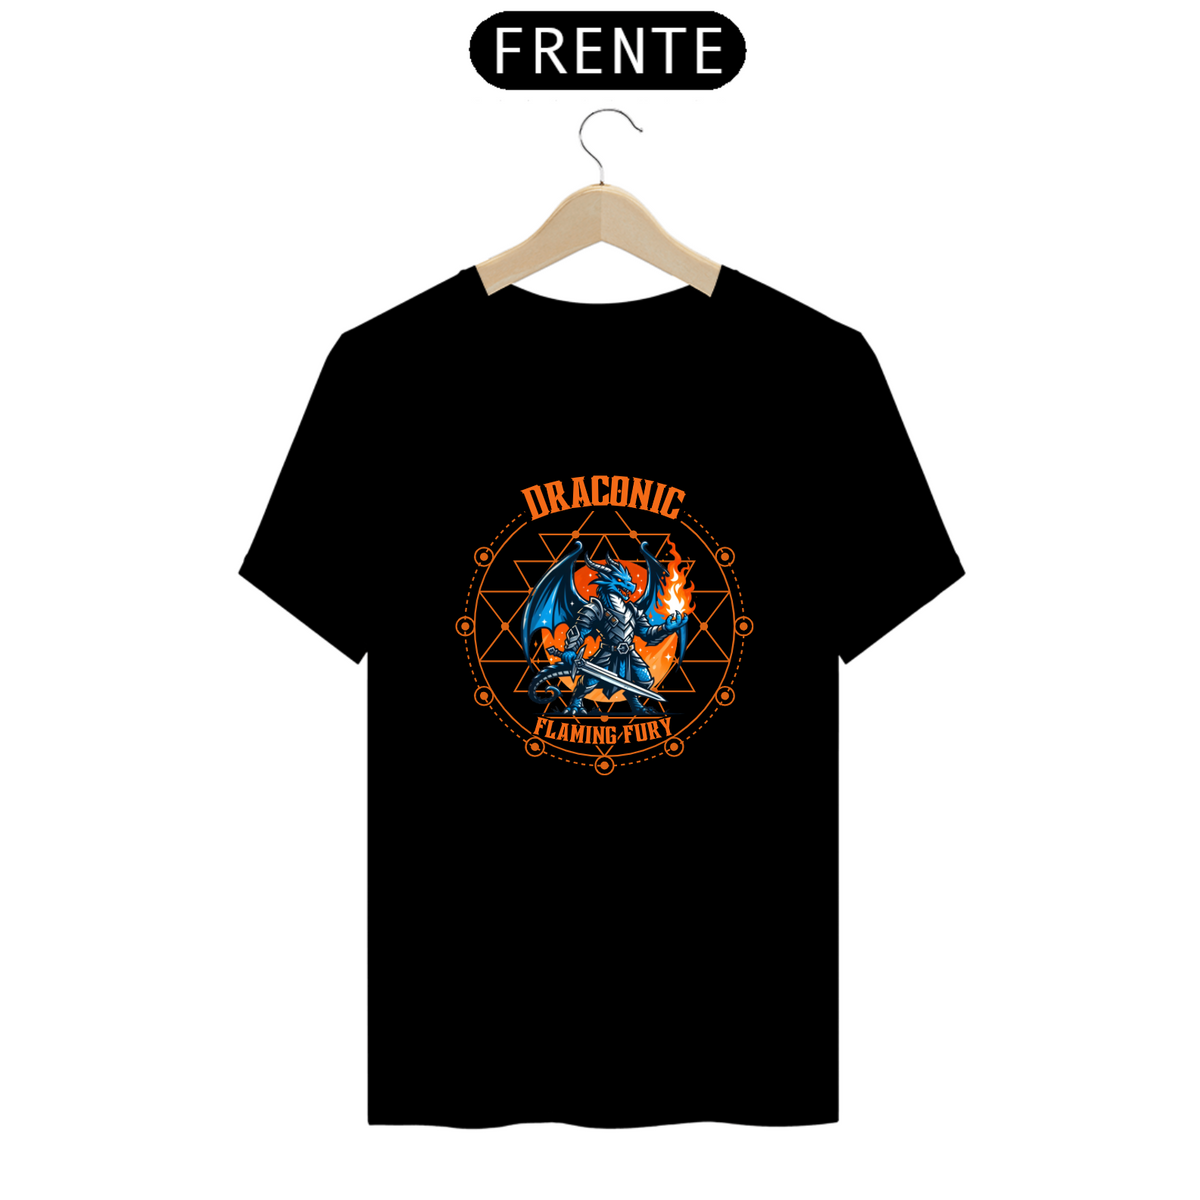 Nome do produto: T-shirt Premium - Draconic Flame Fury EDIÇÂO LIMITADA